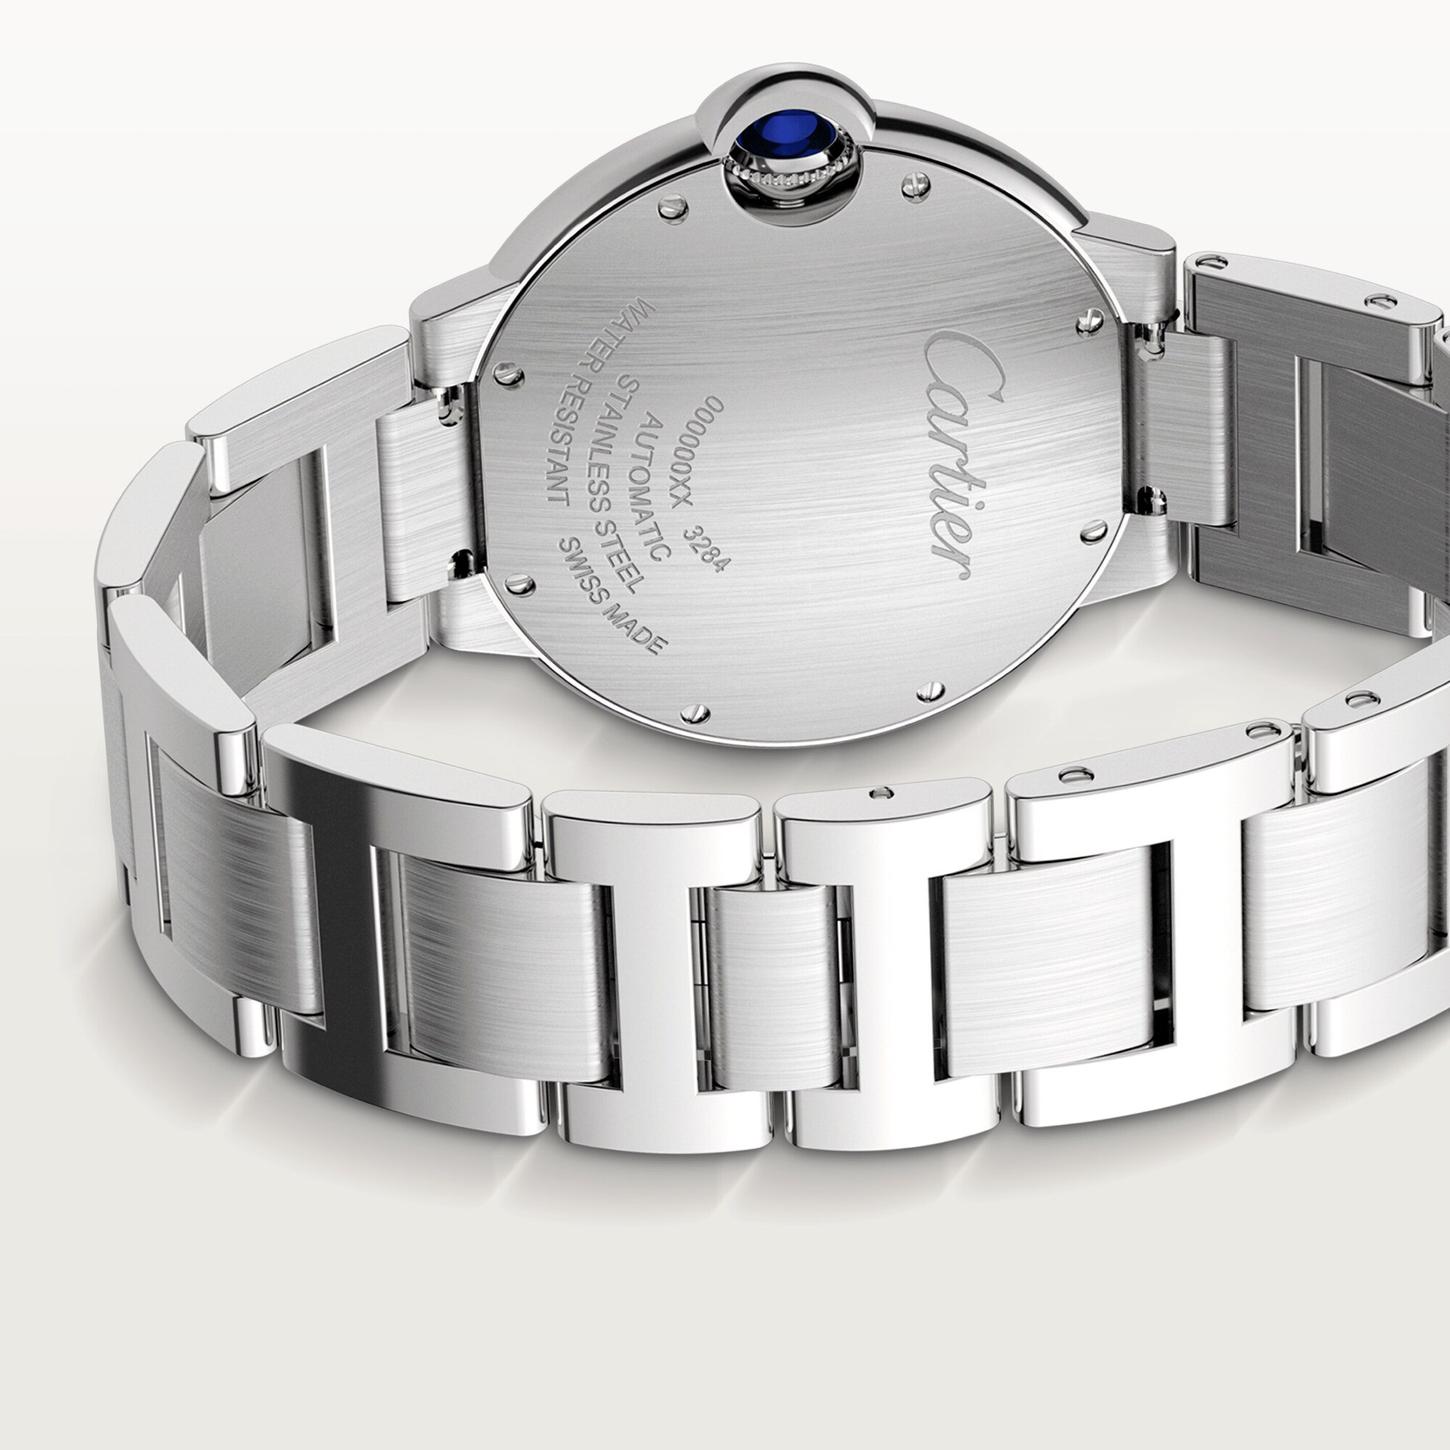 Ballon Bleu de Cartier Watch with Diamonds, 36mm 3